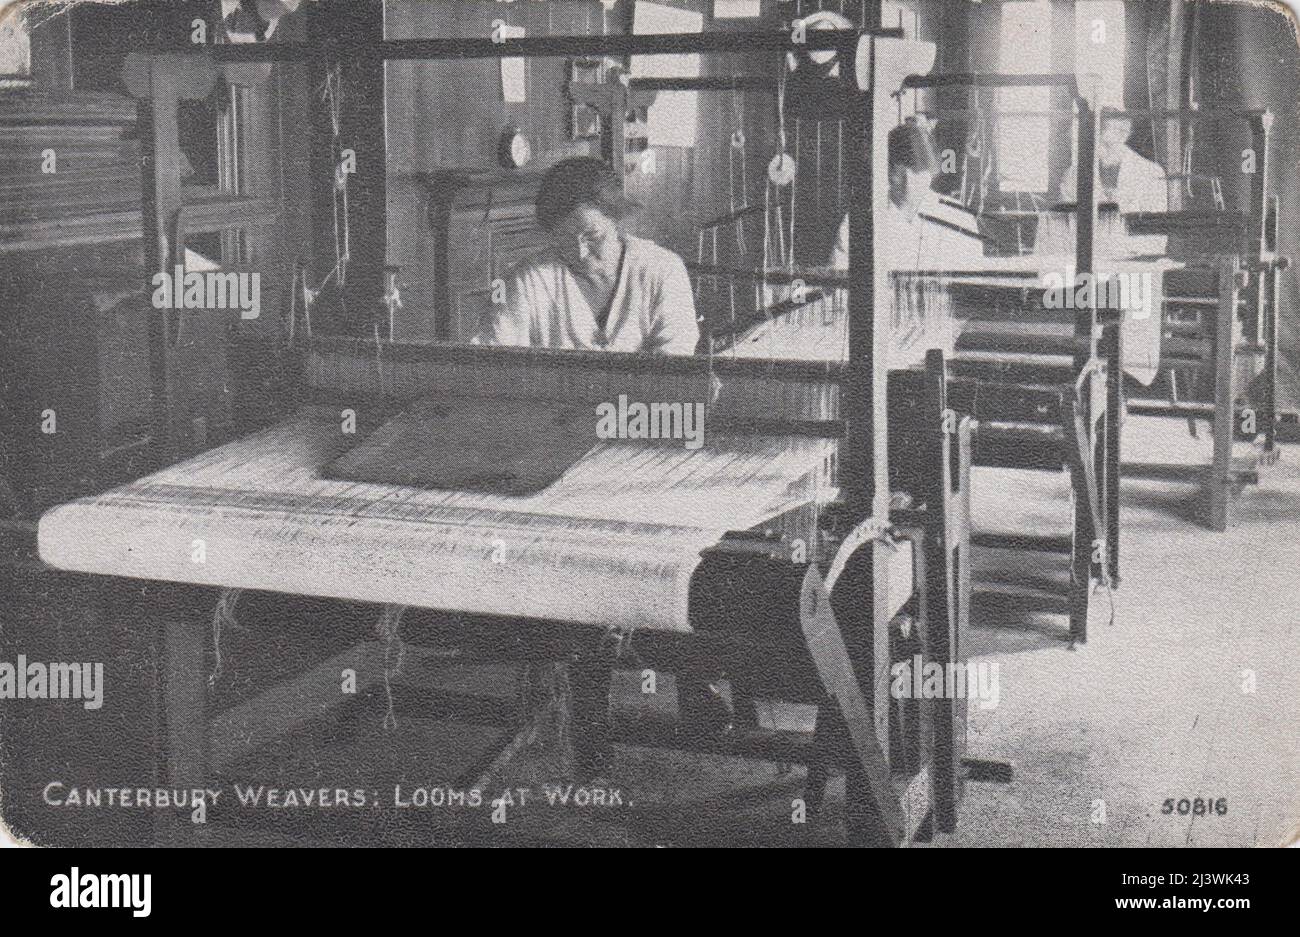 Canterbury weavers: Métiers à tisser au travail. Femmes tissage de textiles au début du 20th siècle Banque D'Images